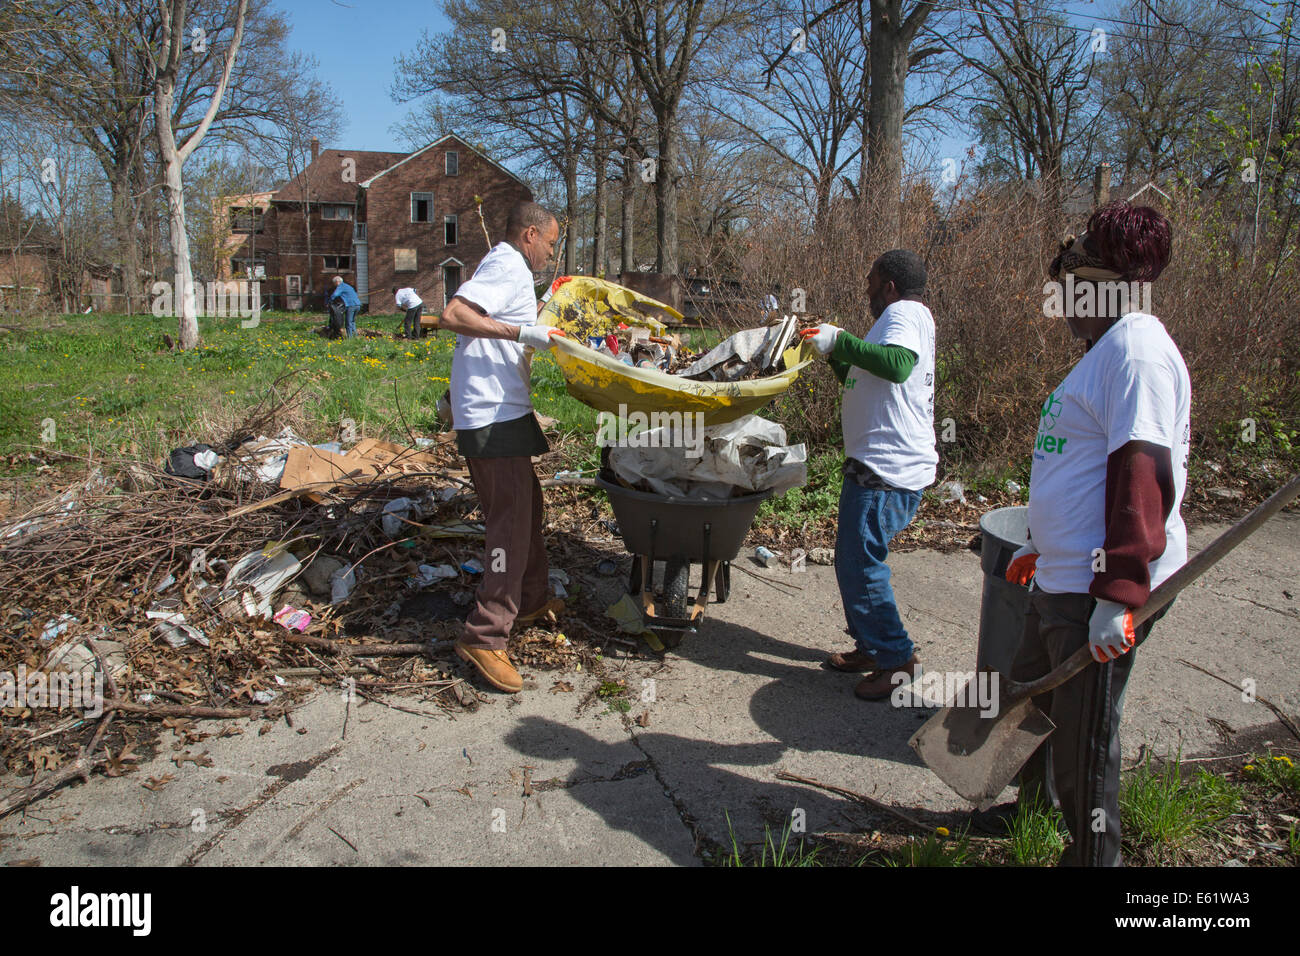 Detroit, Michigan - membres des trois Mile Drive Club Bloc nettoyer les ordures qui avaient été sous-évaluées sur un lot vacant. Banque D'Images